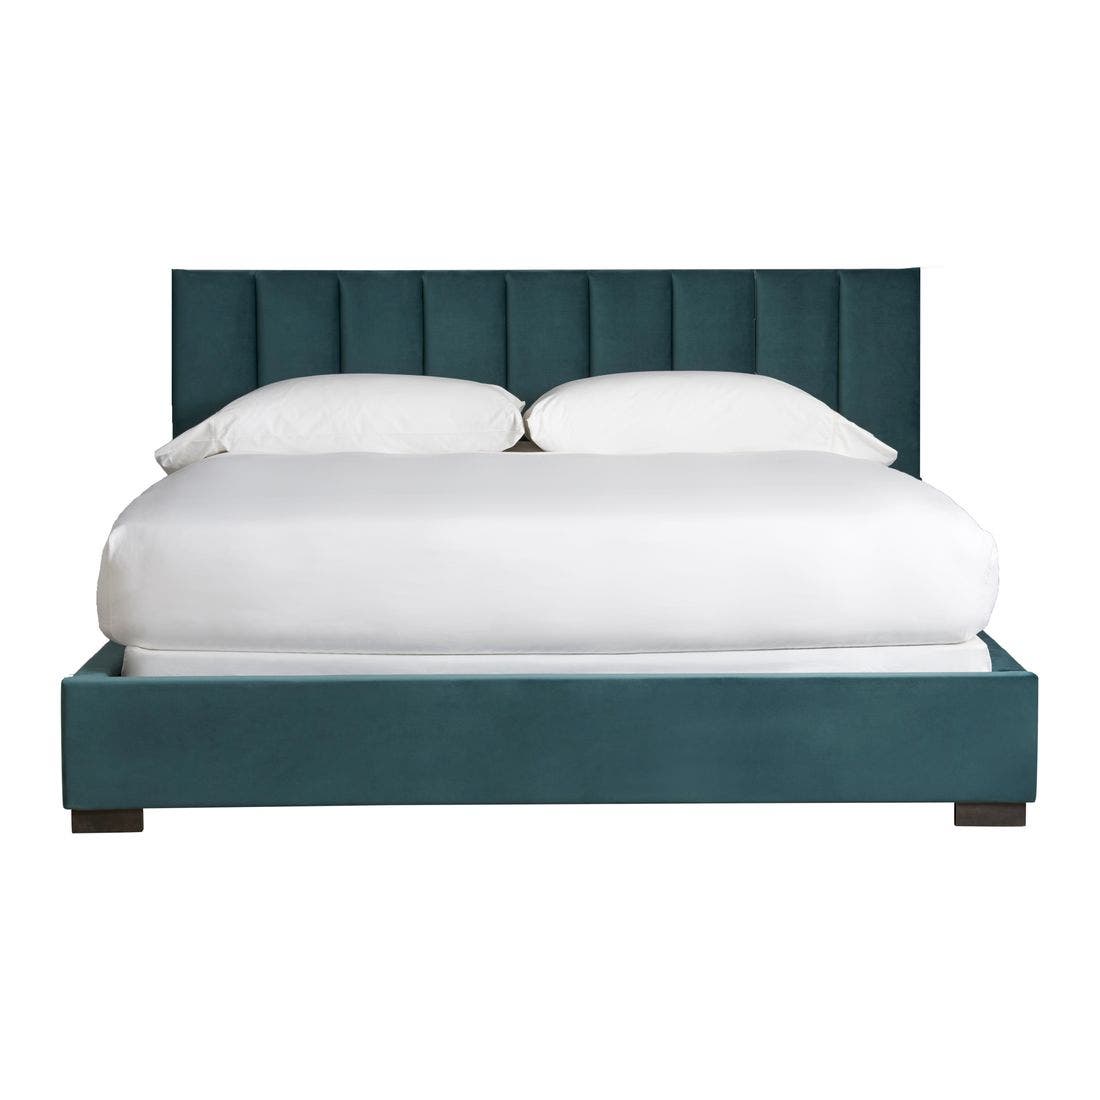 เตียงนอน ขนาดพิเศษ รุ่น Nina Magon สีเขียว-00